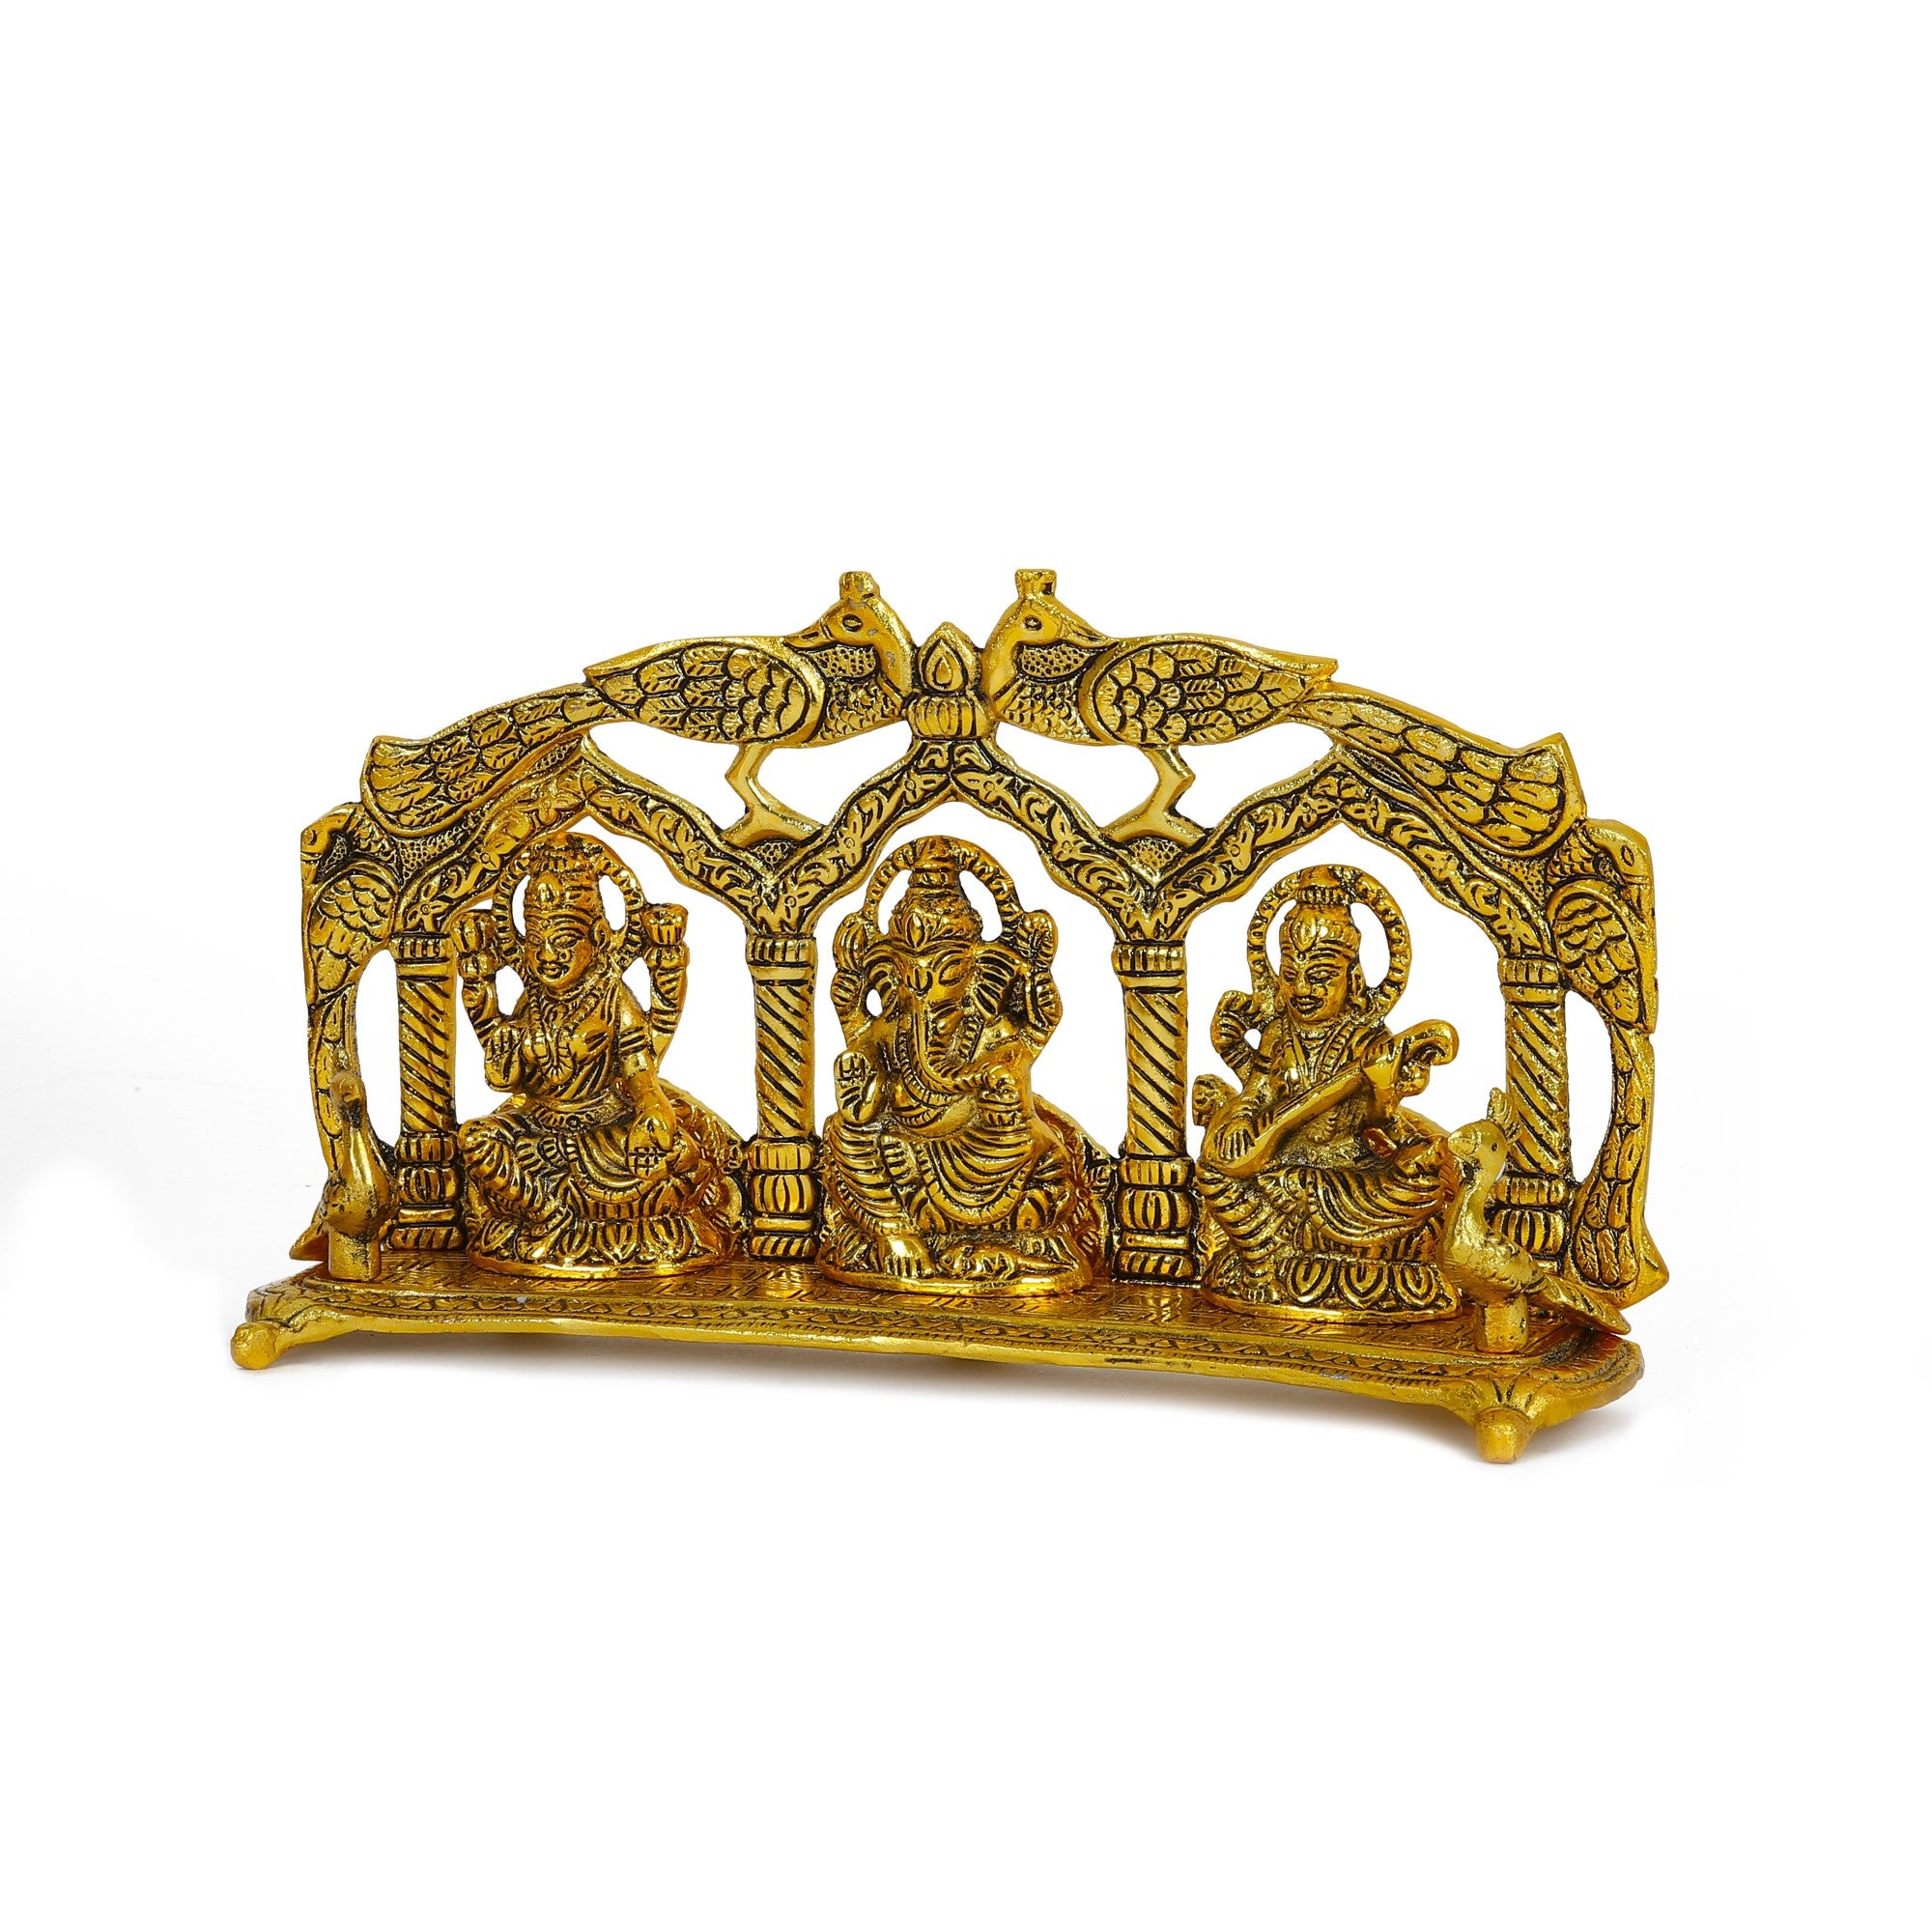 Laxmi Ganesha Saraswati Idol Gold Decorative Showpiece